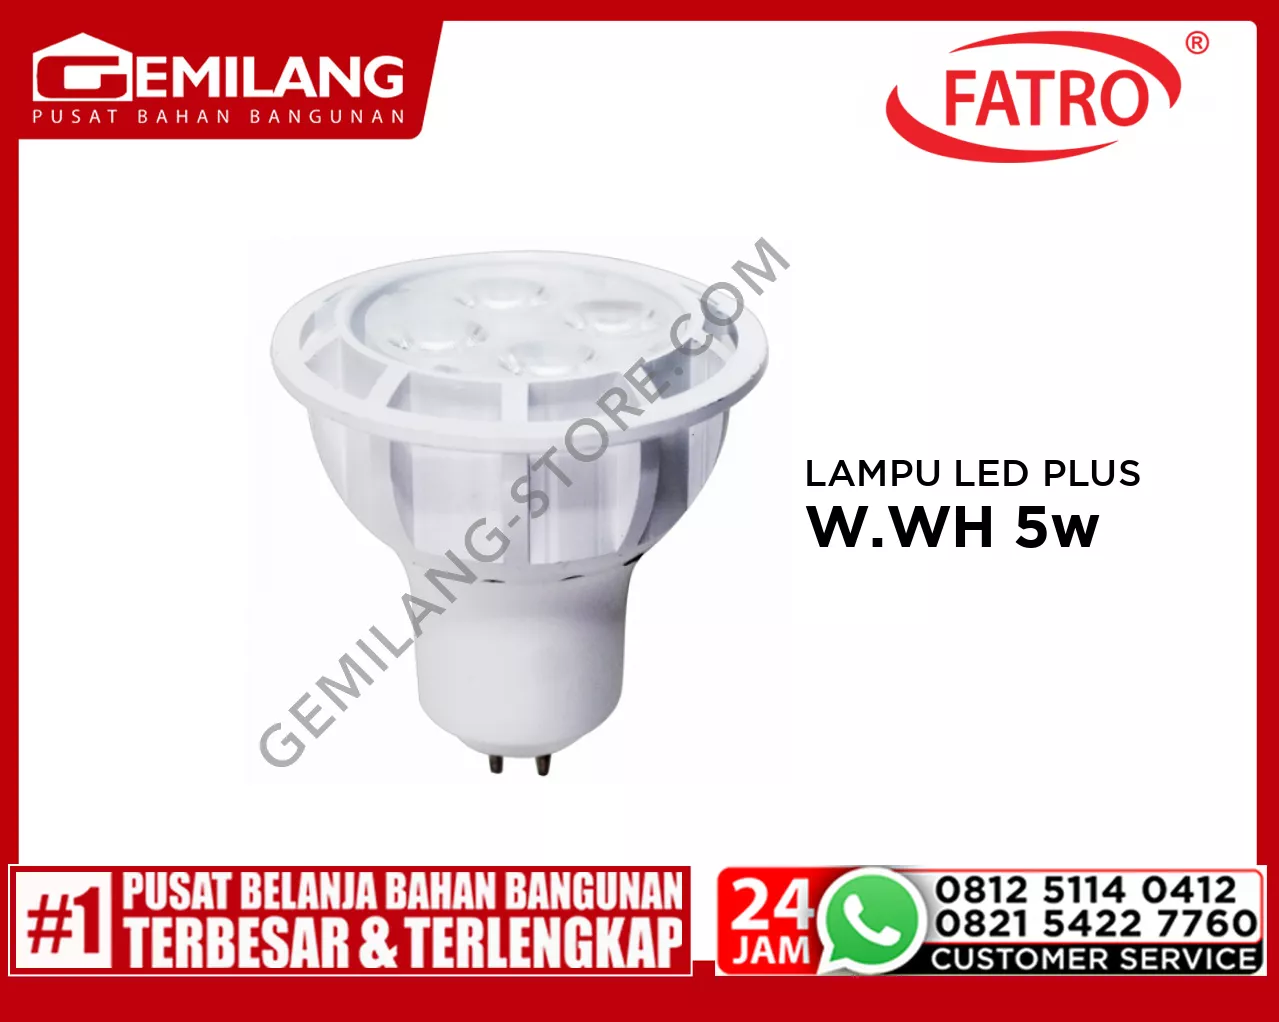 FATRO LAMPU LED PLUS MR16 220v W.WH 5w